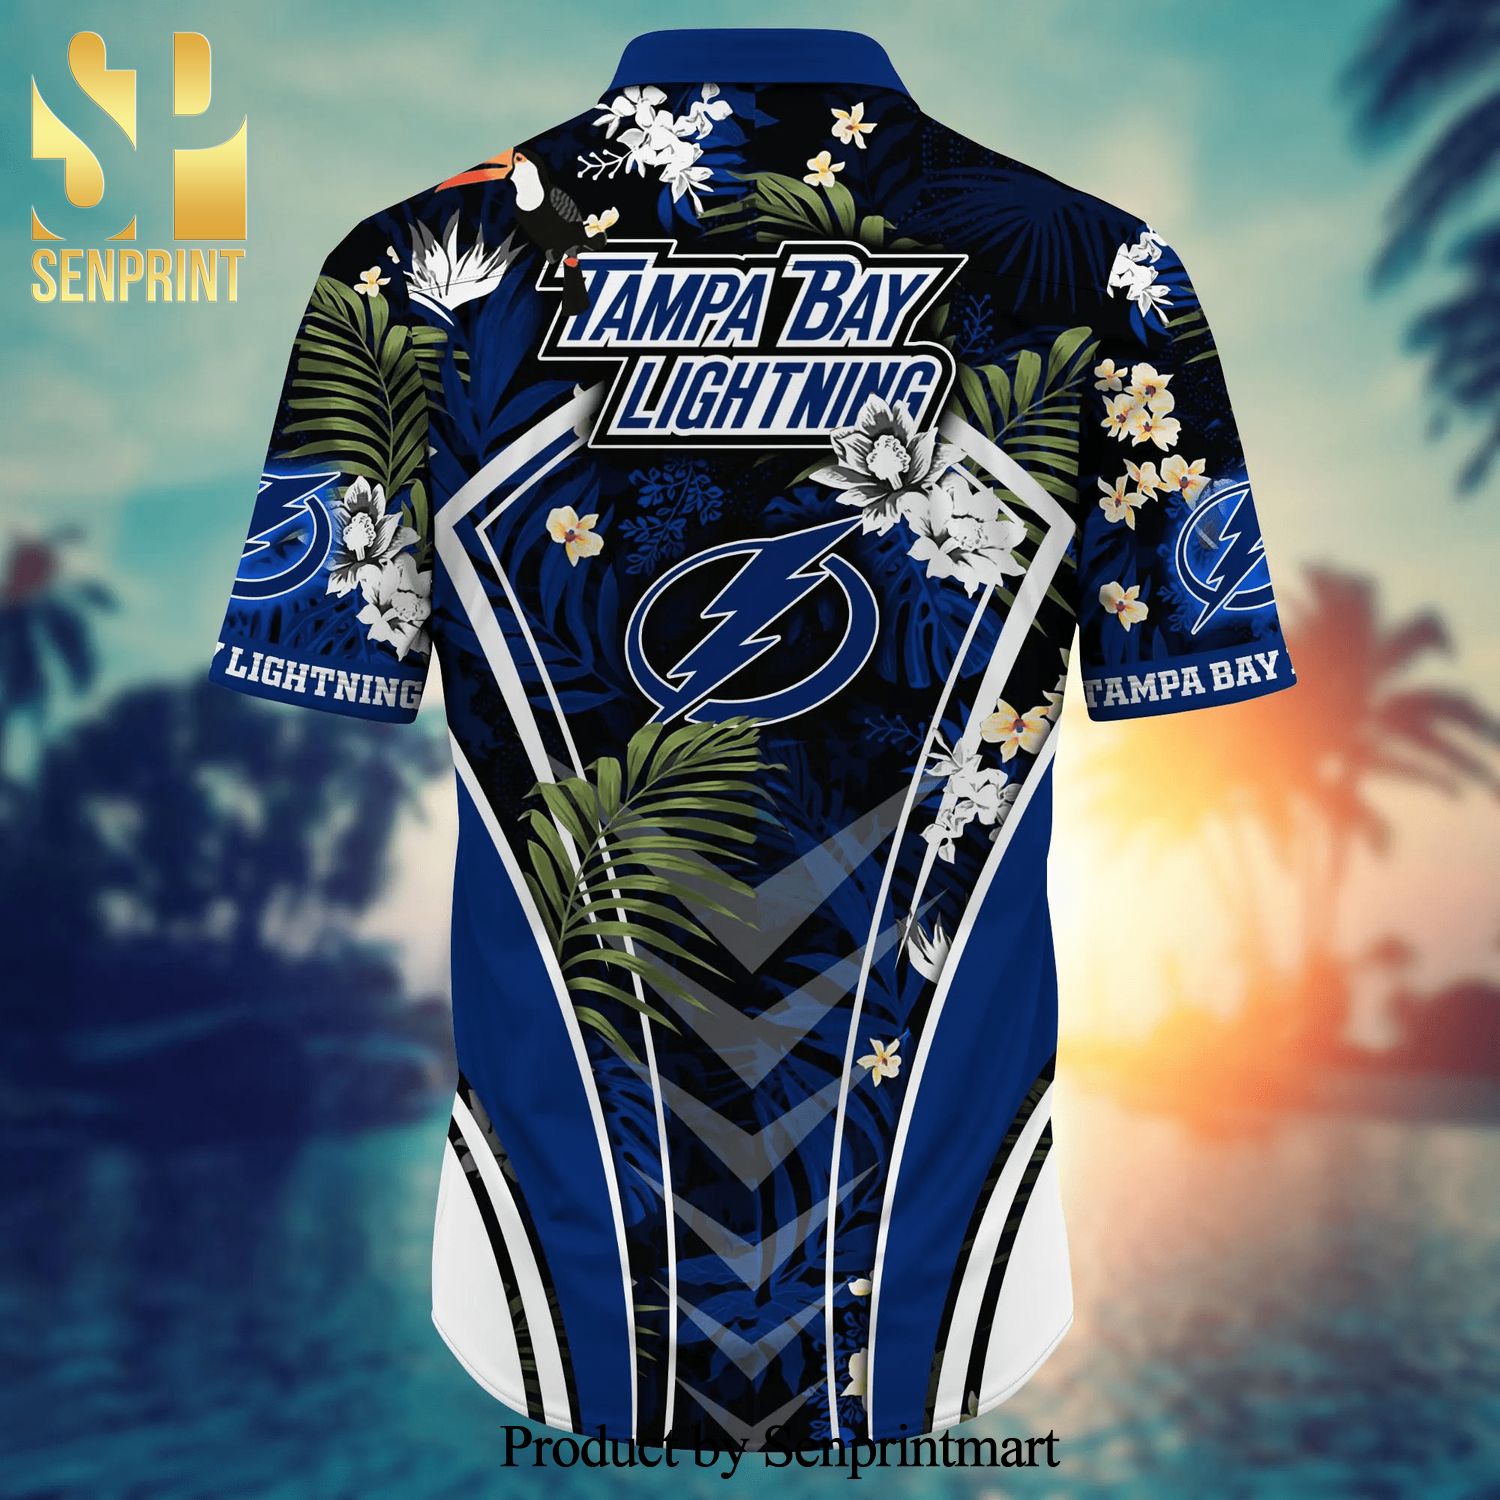 Tampa Bay Lightning NHL Flower Hawaiian Shirt For Men Women Best Gift For  Fans - Freedomdesign